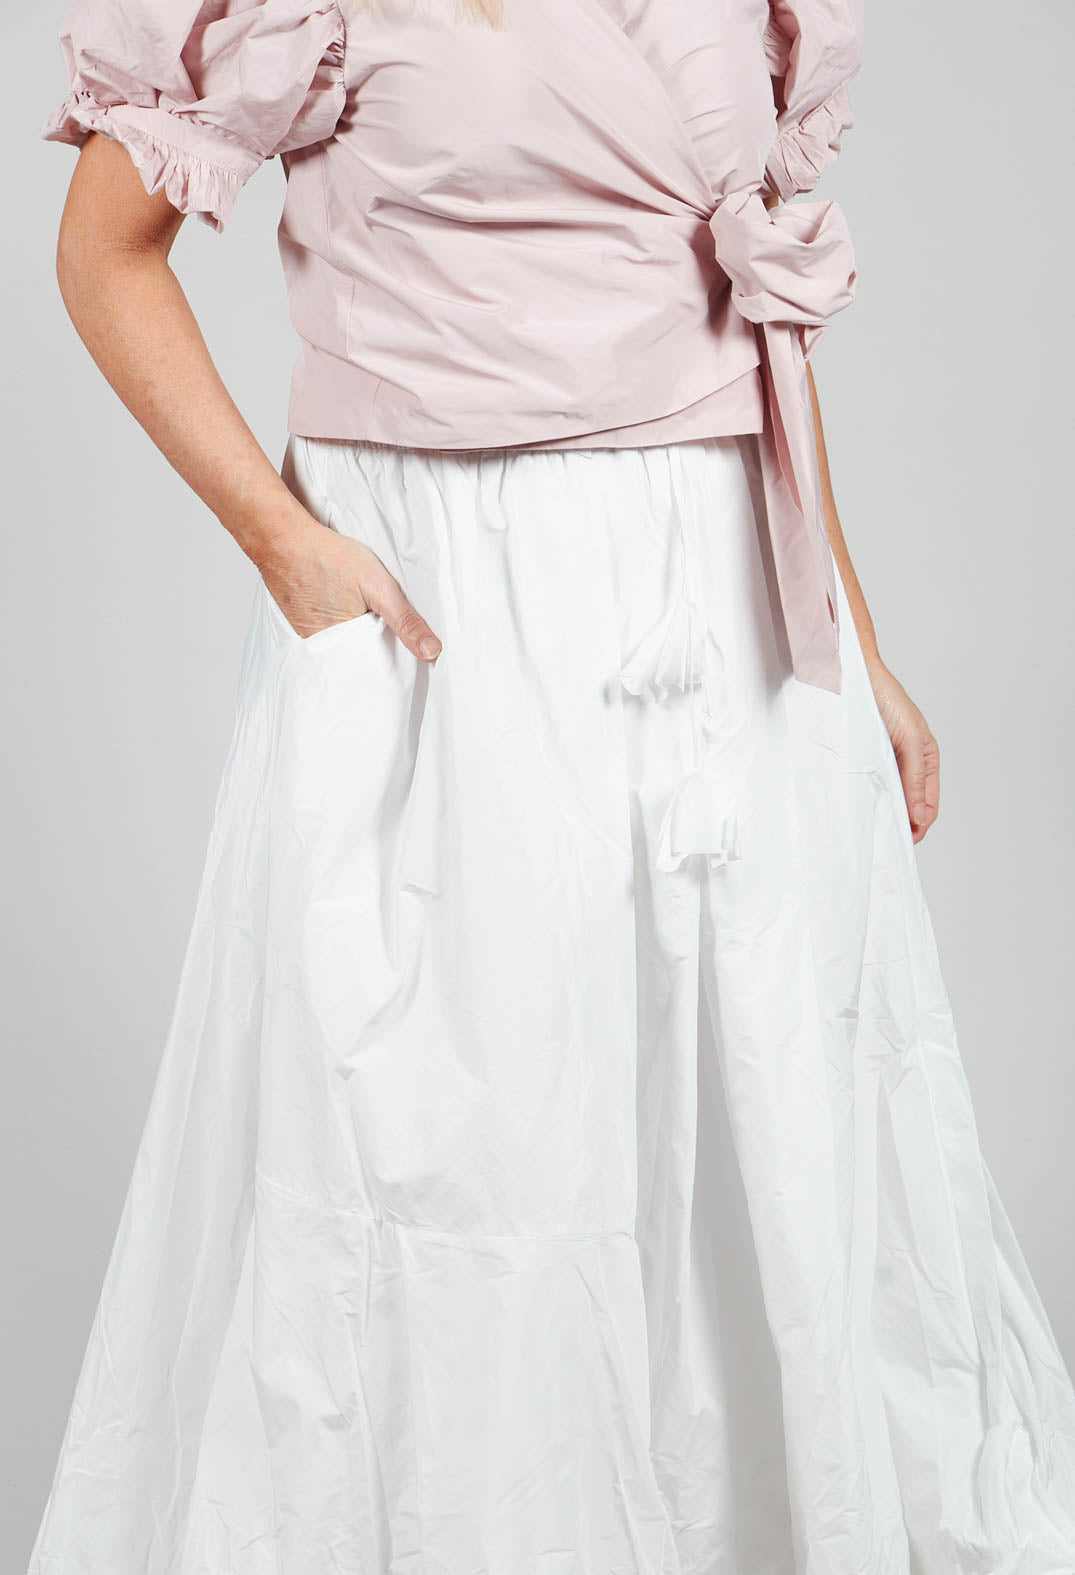 Dipped Hemline Skirt in White